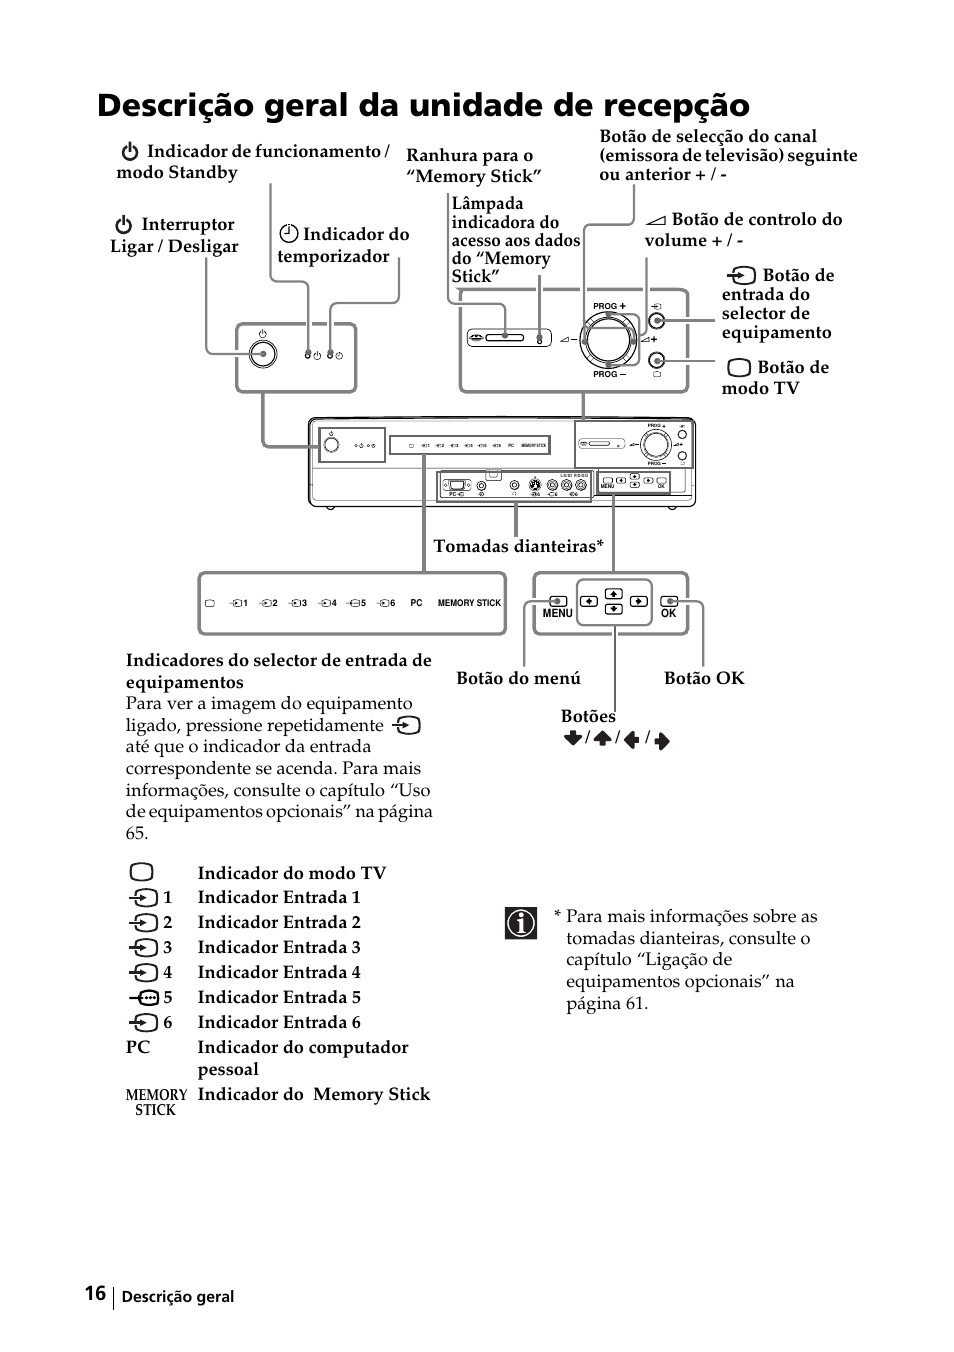 Descrição geral da unidade de recepção | Sony KE-42MR1 Manuale d'uso | Pagina 167 / 302